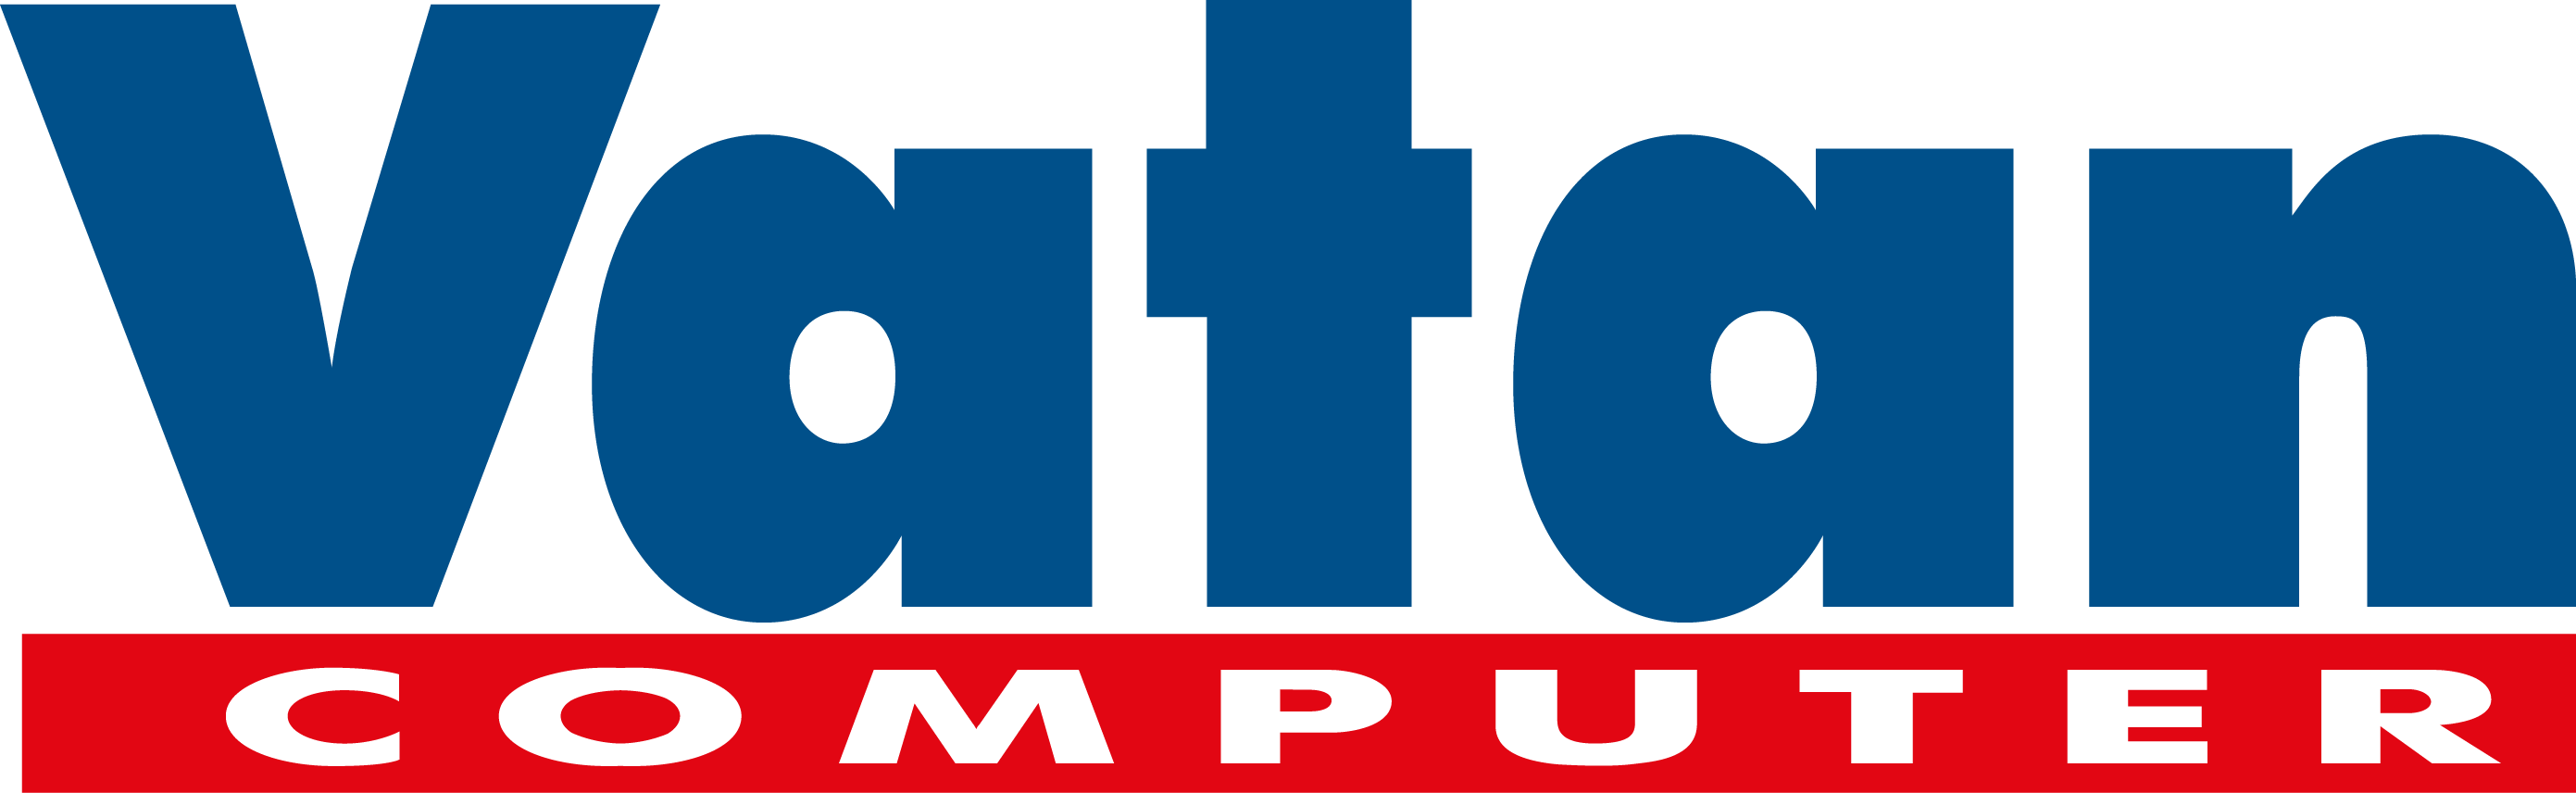 Vatan Bilgisayar Logo - Vatan Bilgisayar (2782x856)